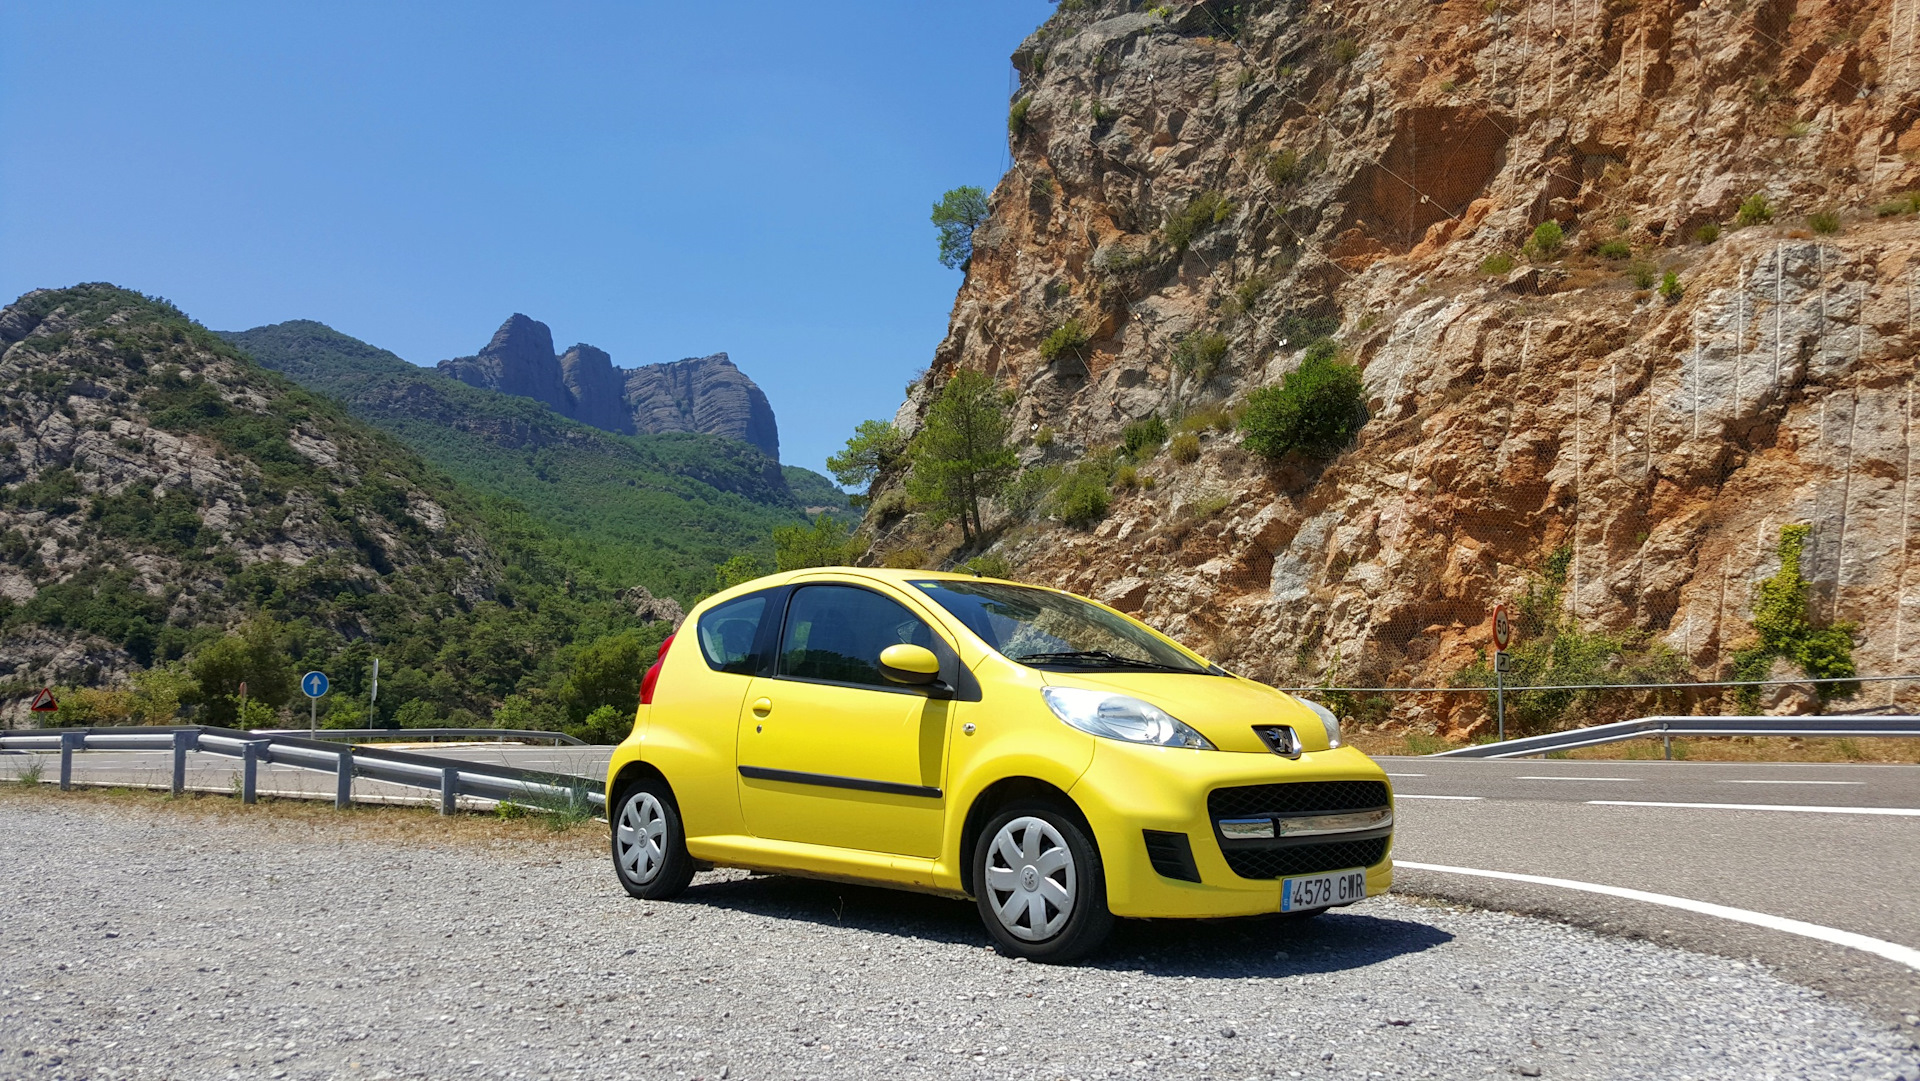 Аренда авто в испании — условия и правила | easy travel